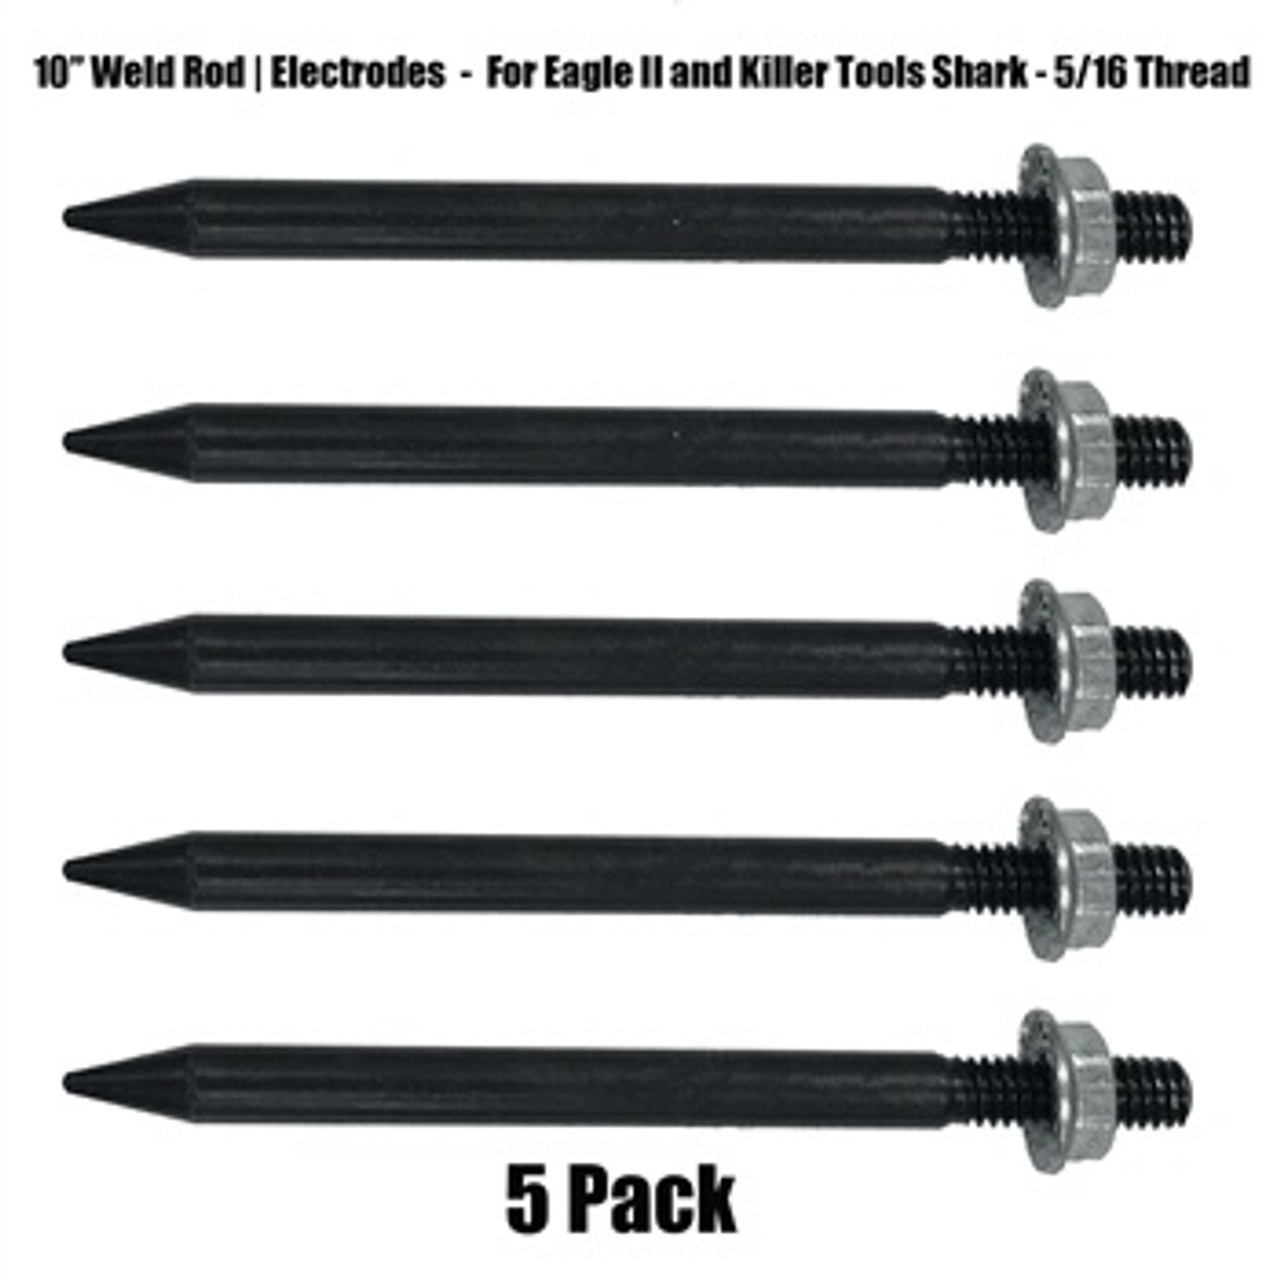 Weld Rod, Electrode 10" 5 Pack - Eagle II & Killer Tools Shark